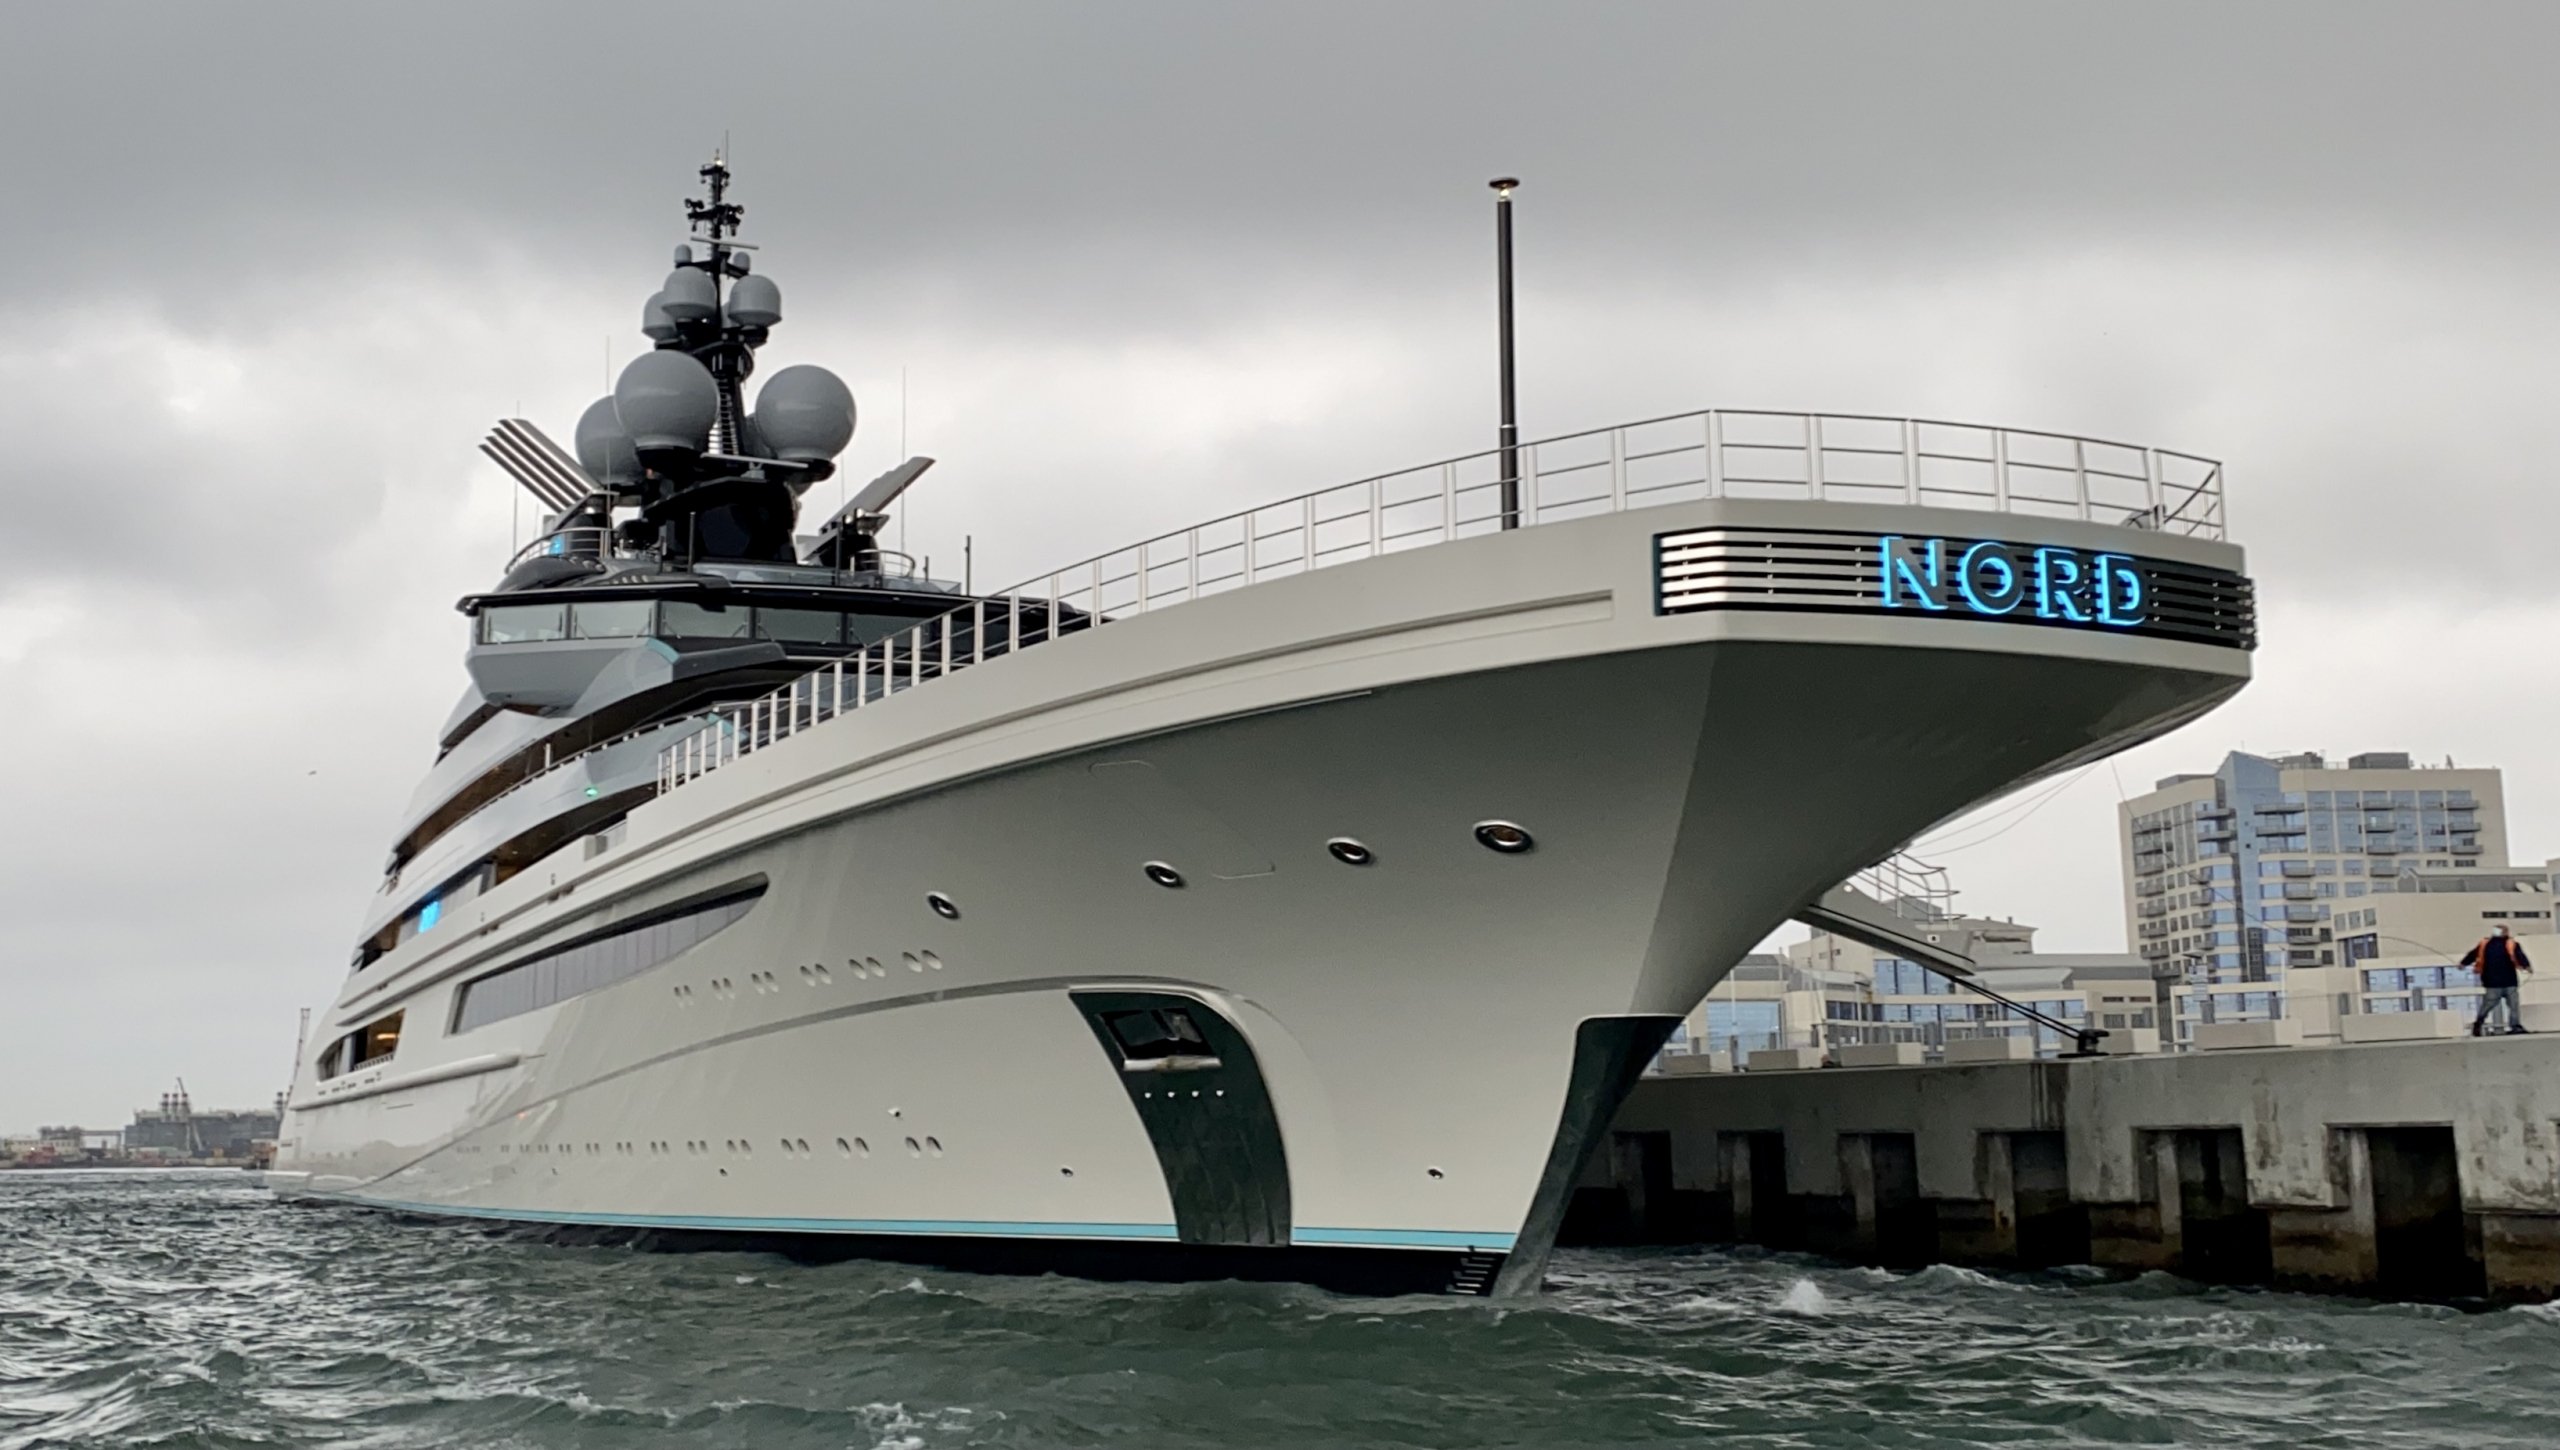 Nord Yacht • Lurssen • 2020 • News